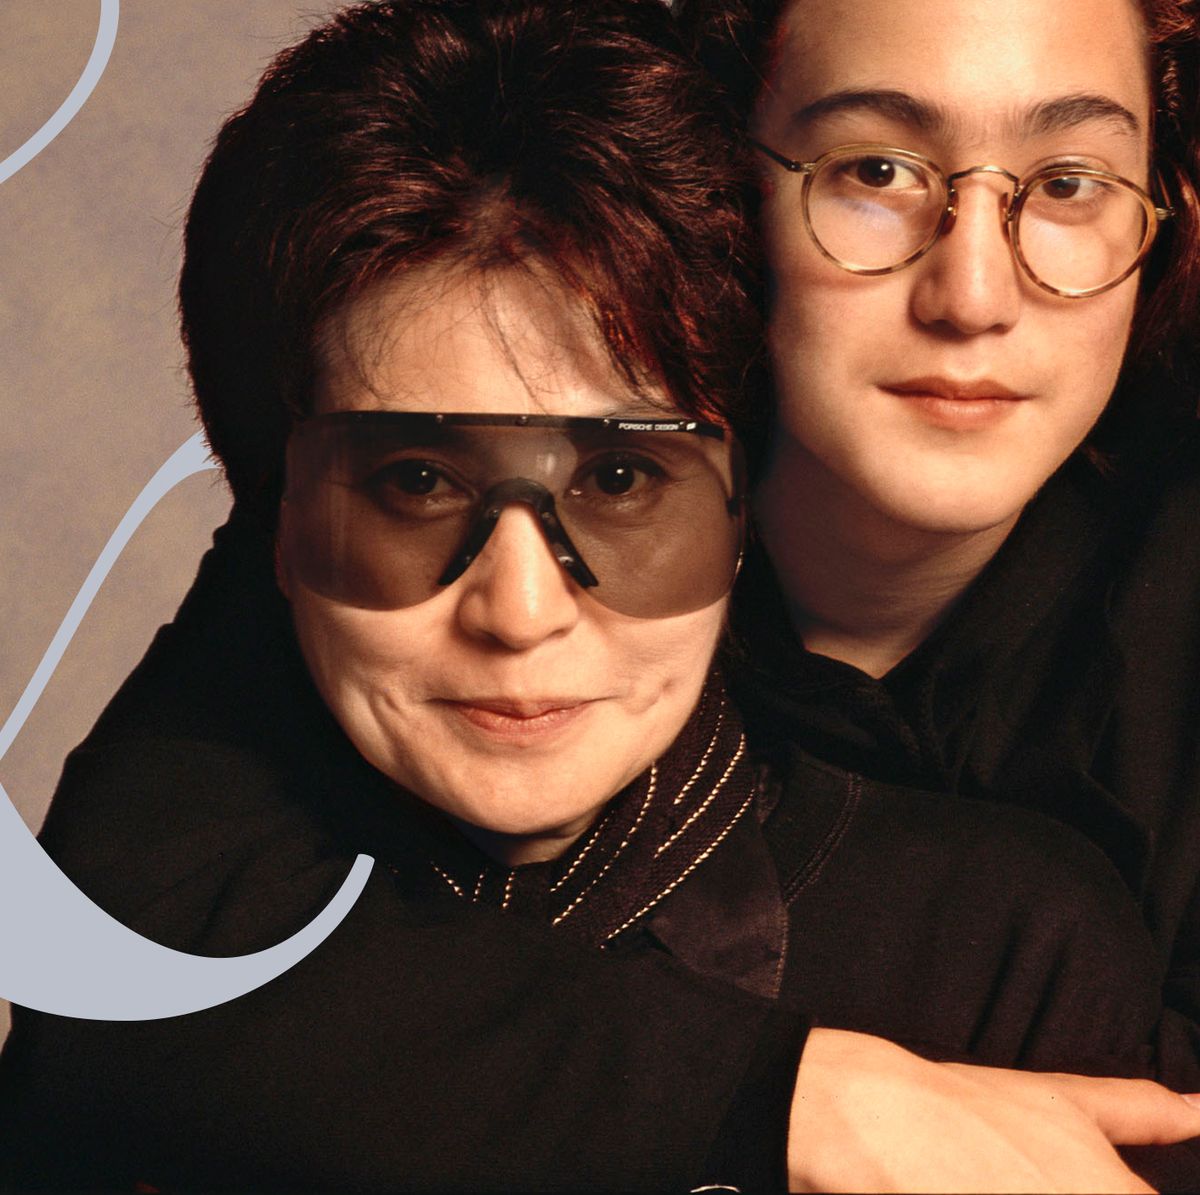 Yoko Ono and Sean Lennon Interview - Yoko Ono Poses With Sean Lennon